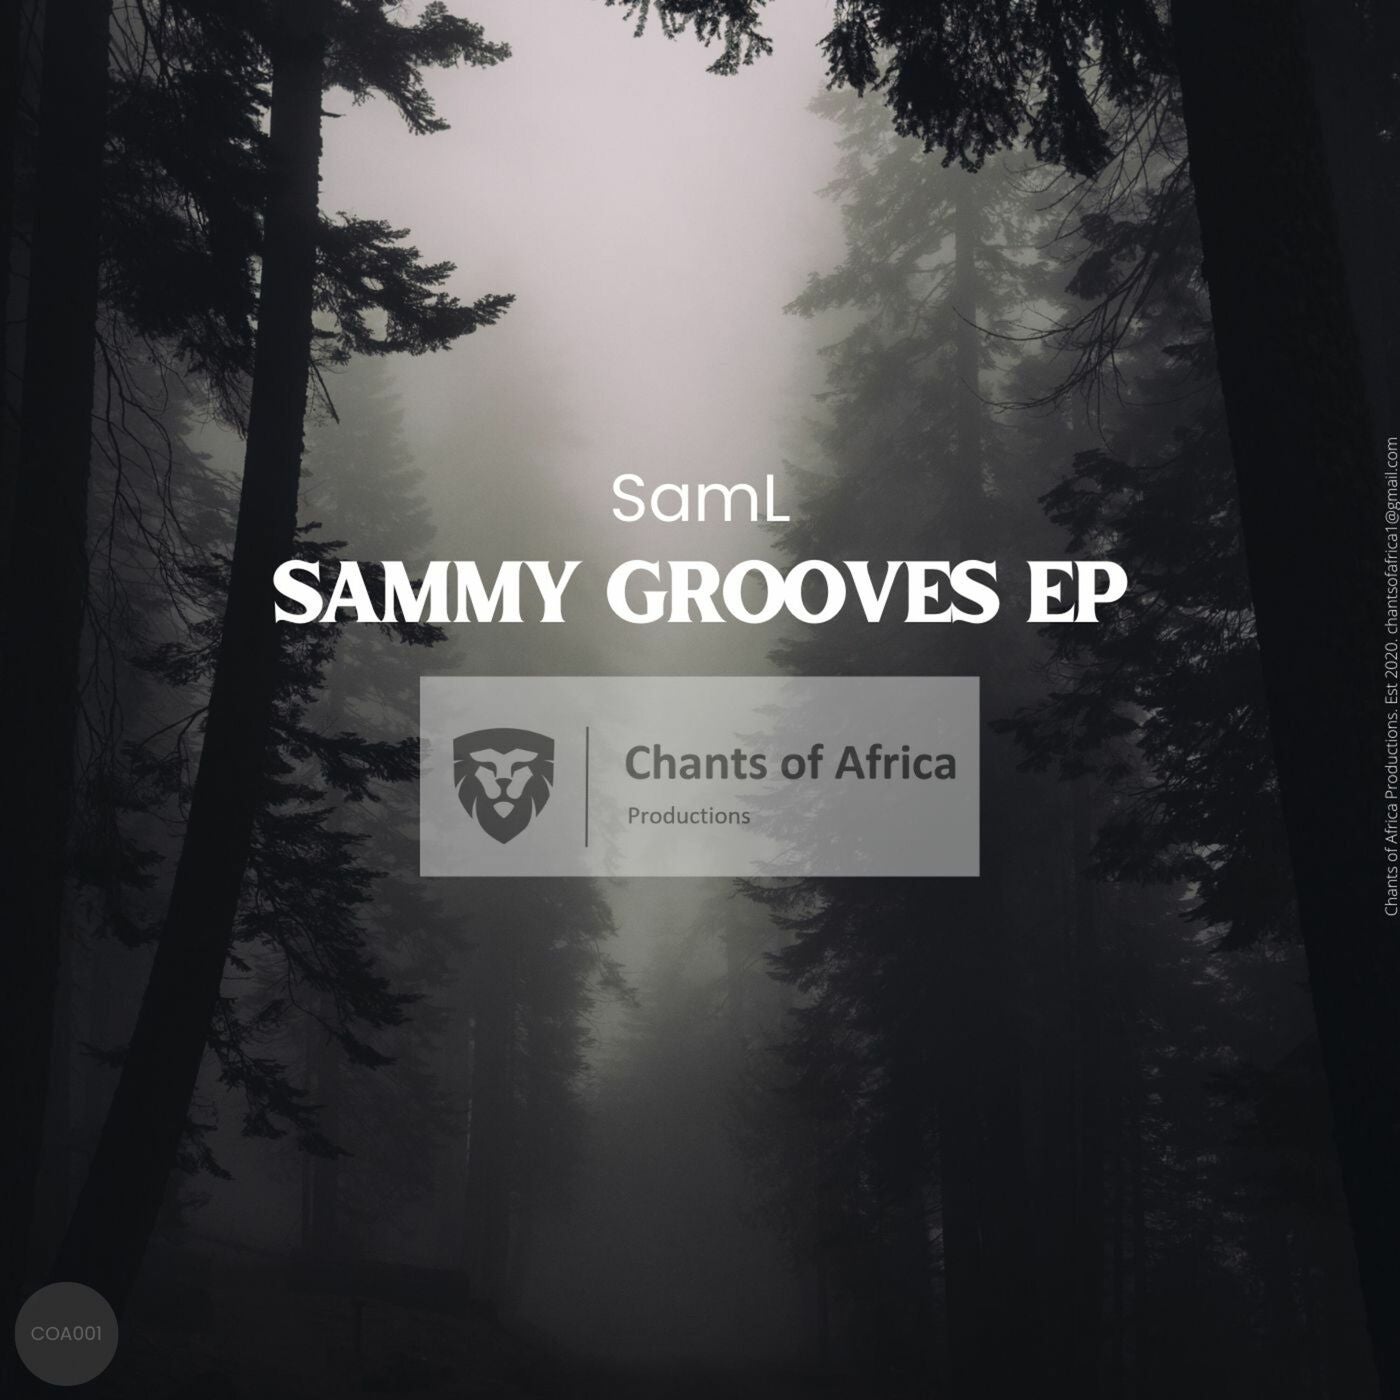 Sammy Grooves EP